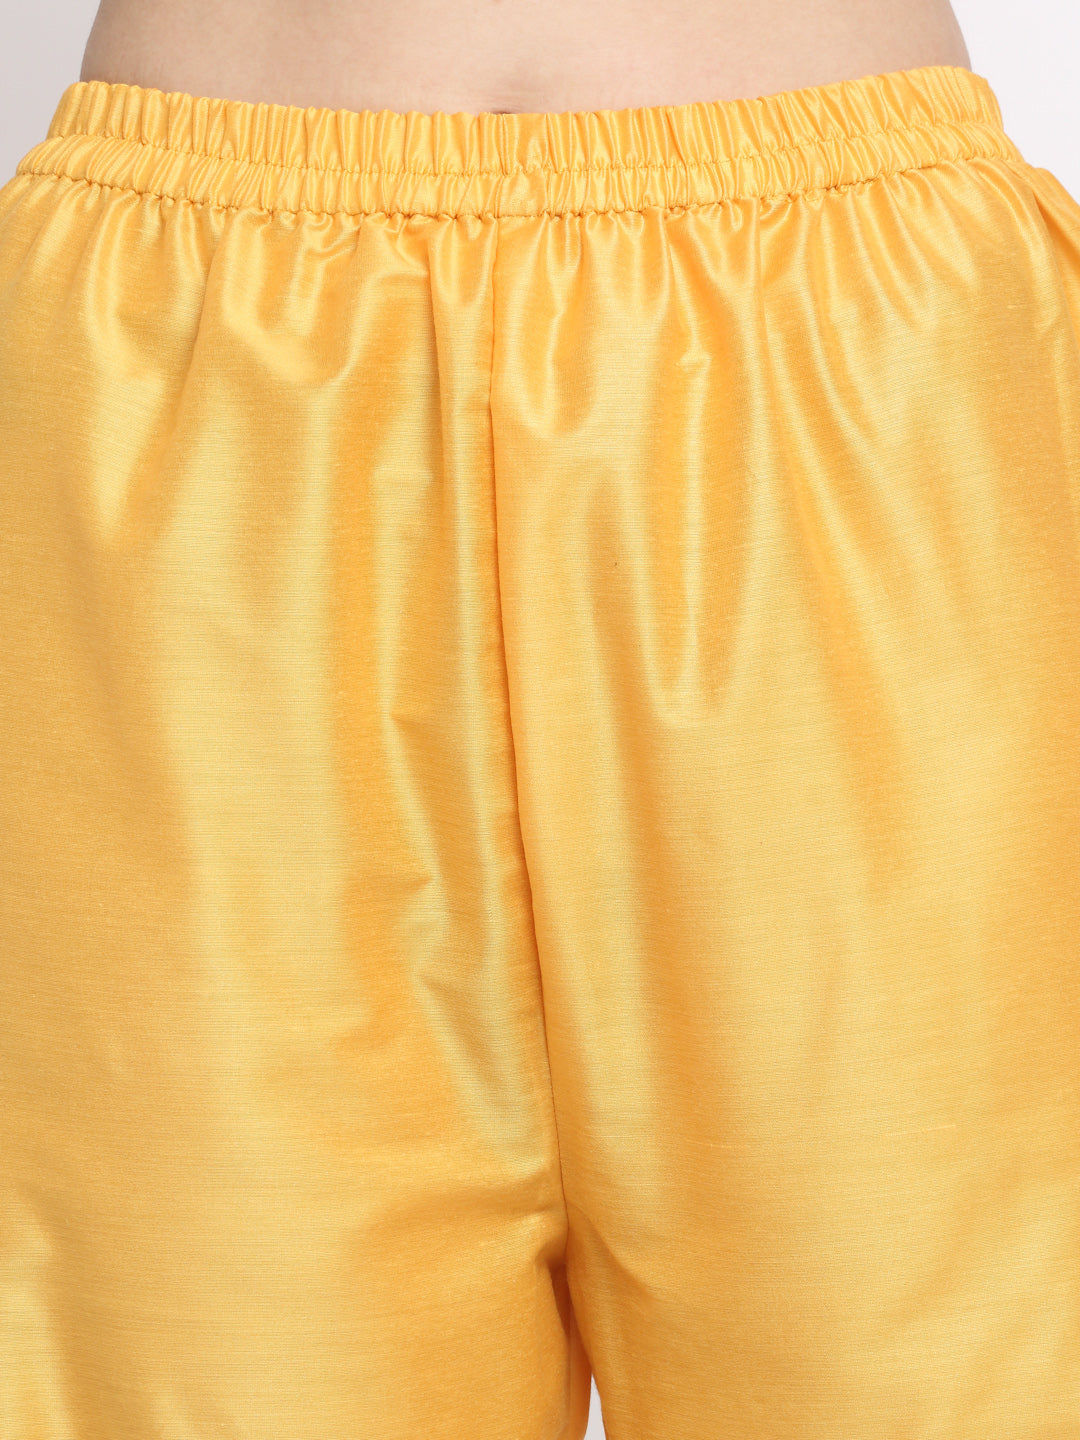 Women's Tyohaar Yellow Straight Kurti With Straight Pants And Dupatta - Anokherang